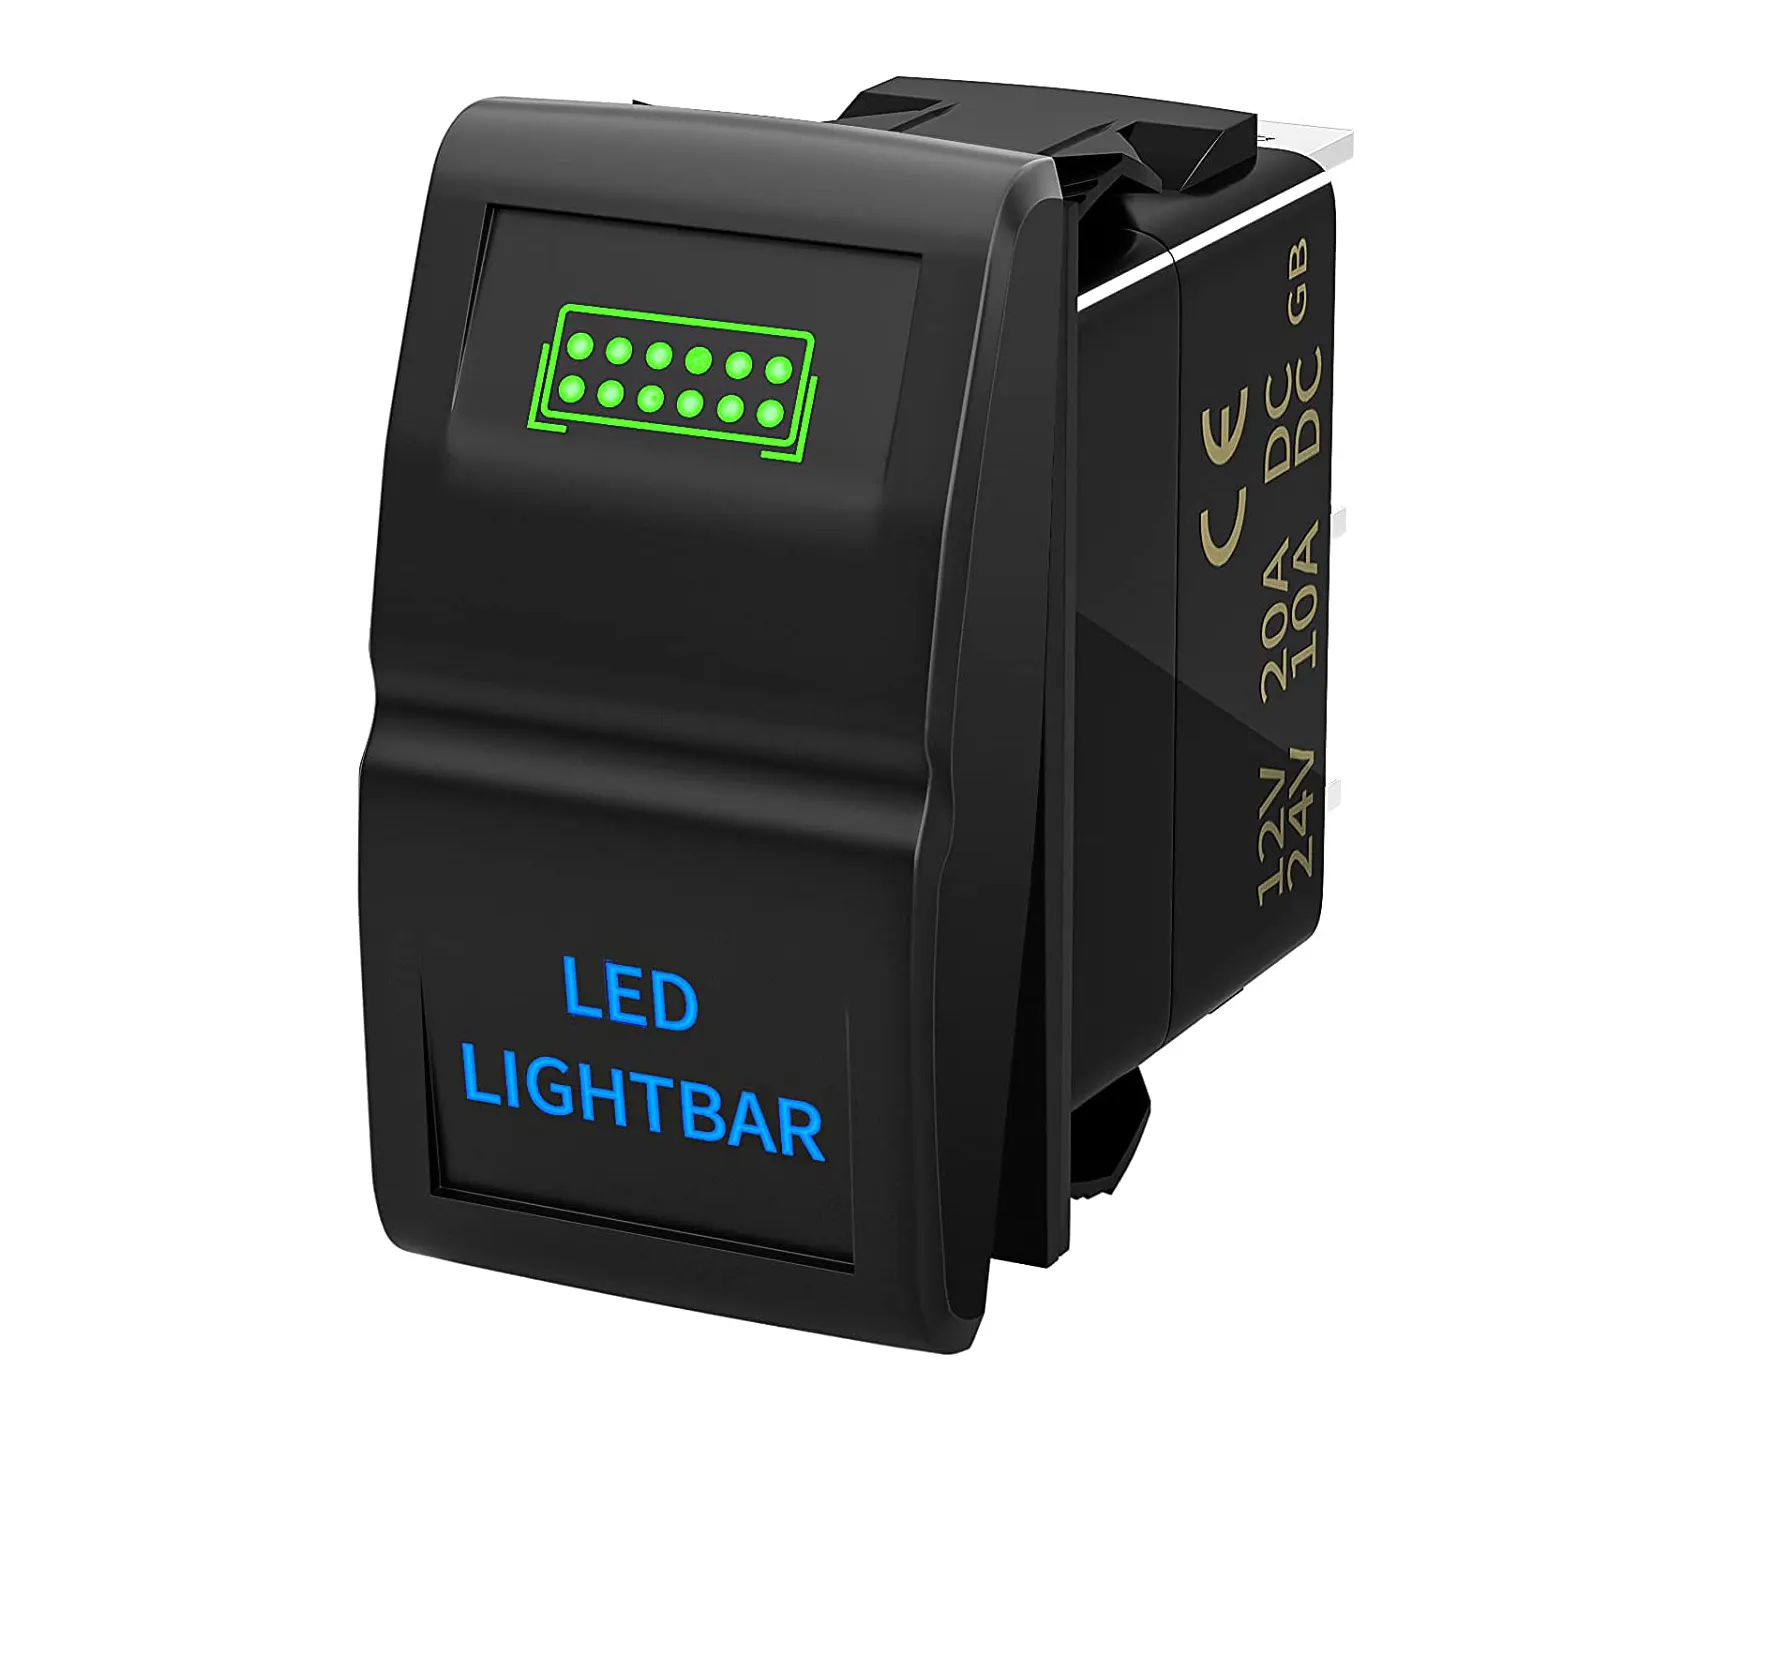 Interrupteur barre lumineux LED 12 V 20a, 5 broches, marche/arrêt, étanche, double couleur, bleu/vert, pour voiture Jeep et automobile